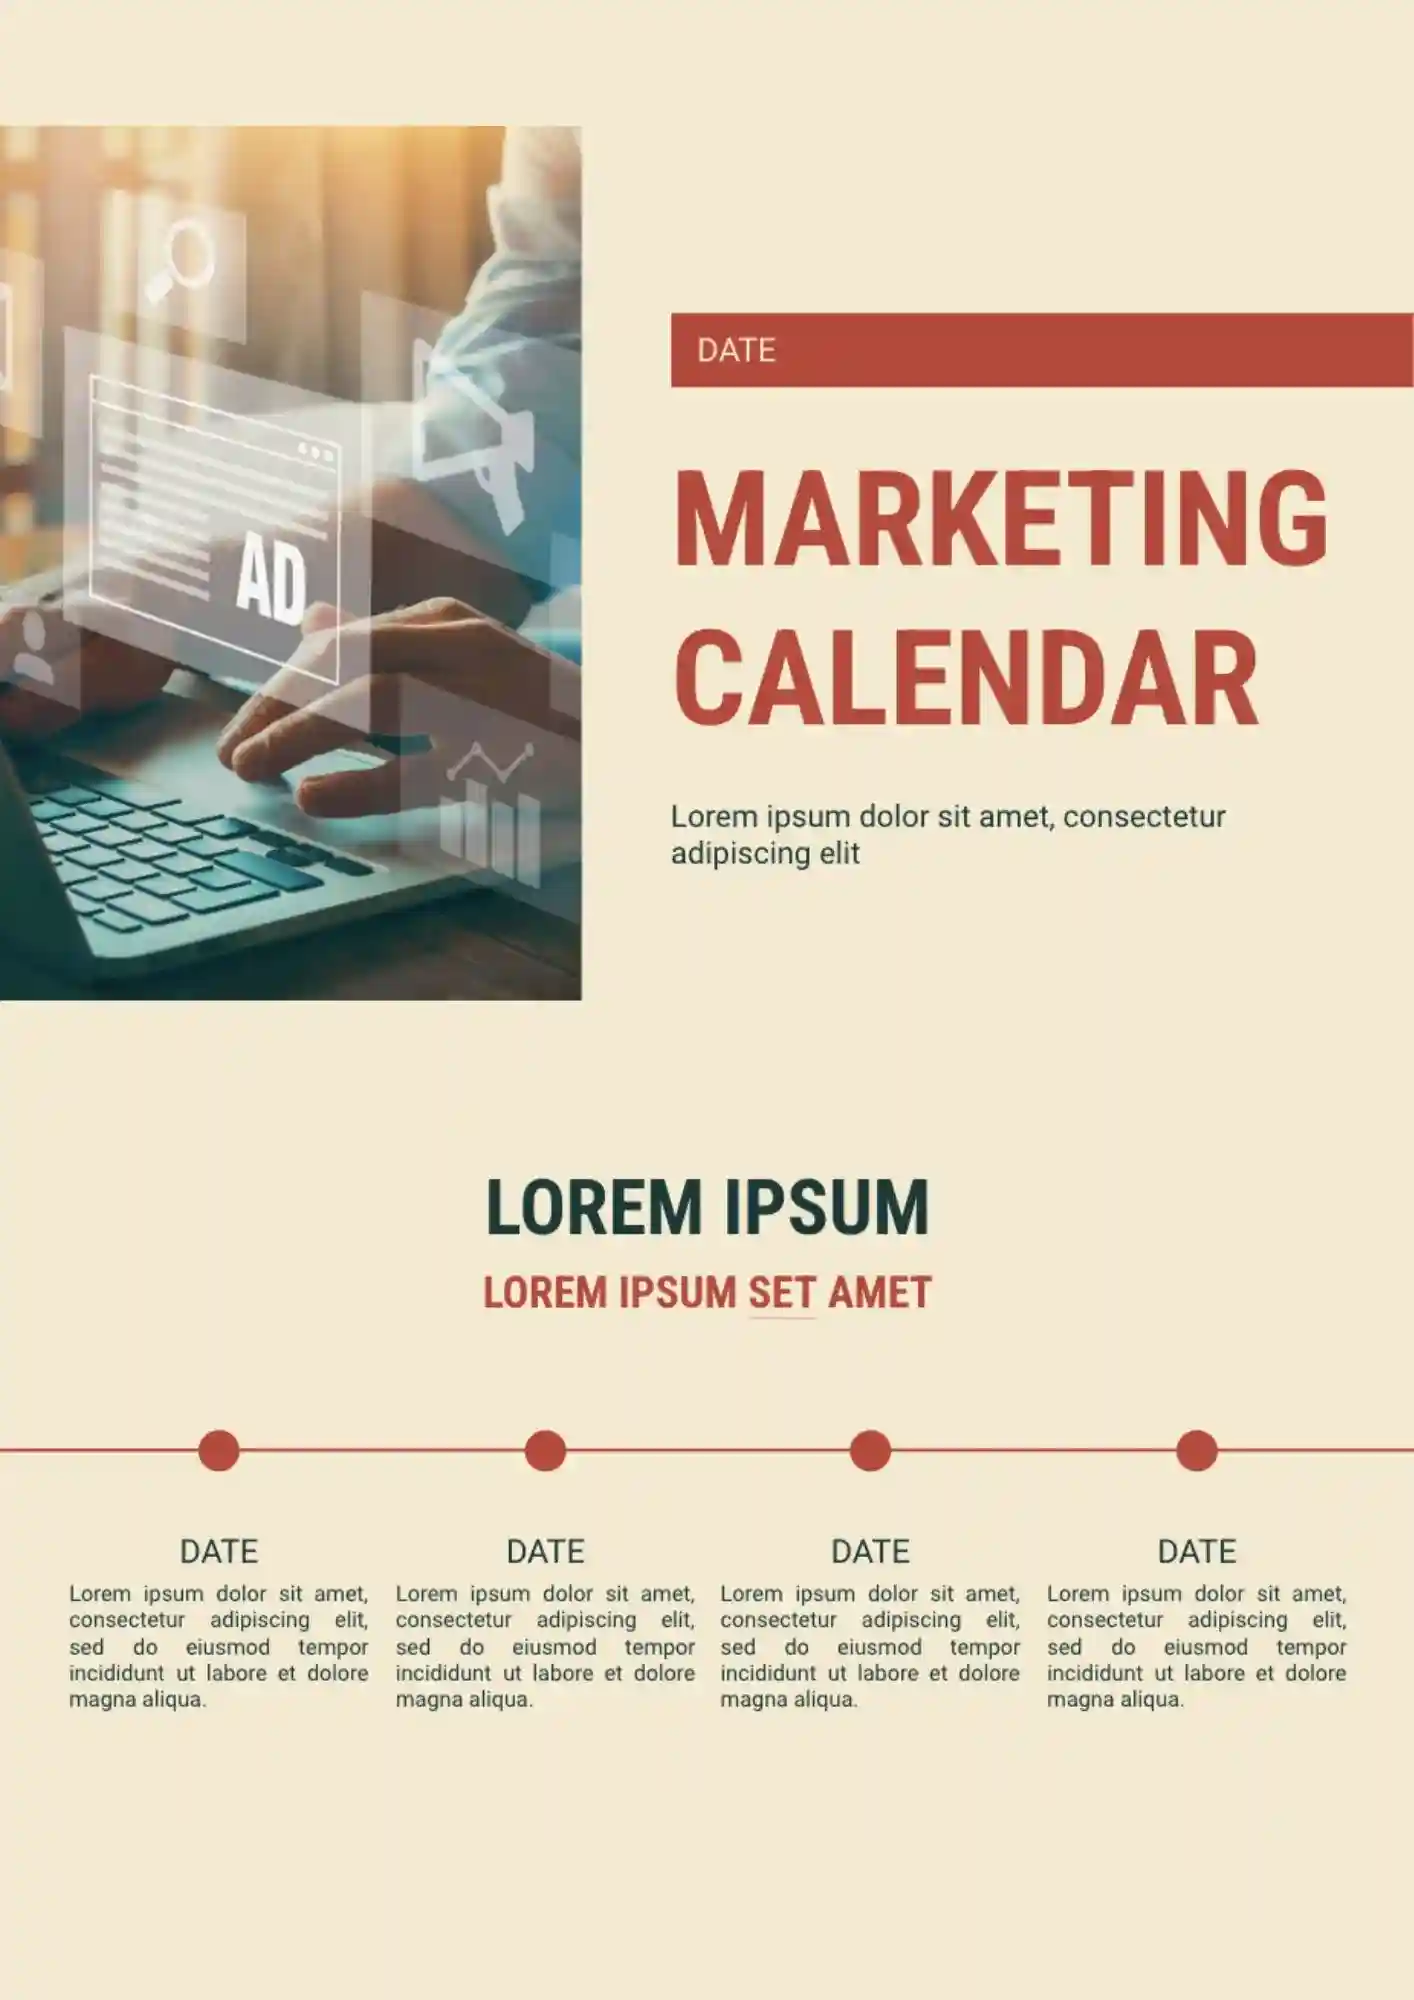 Marketing Calendar Template